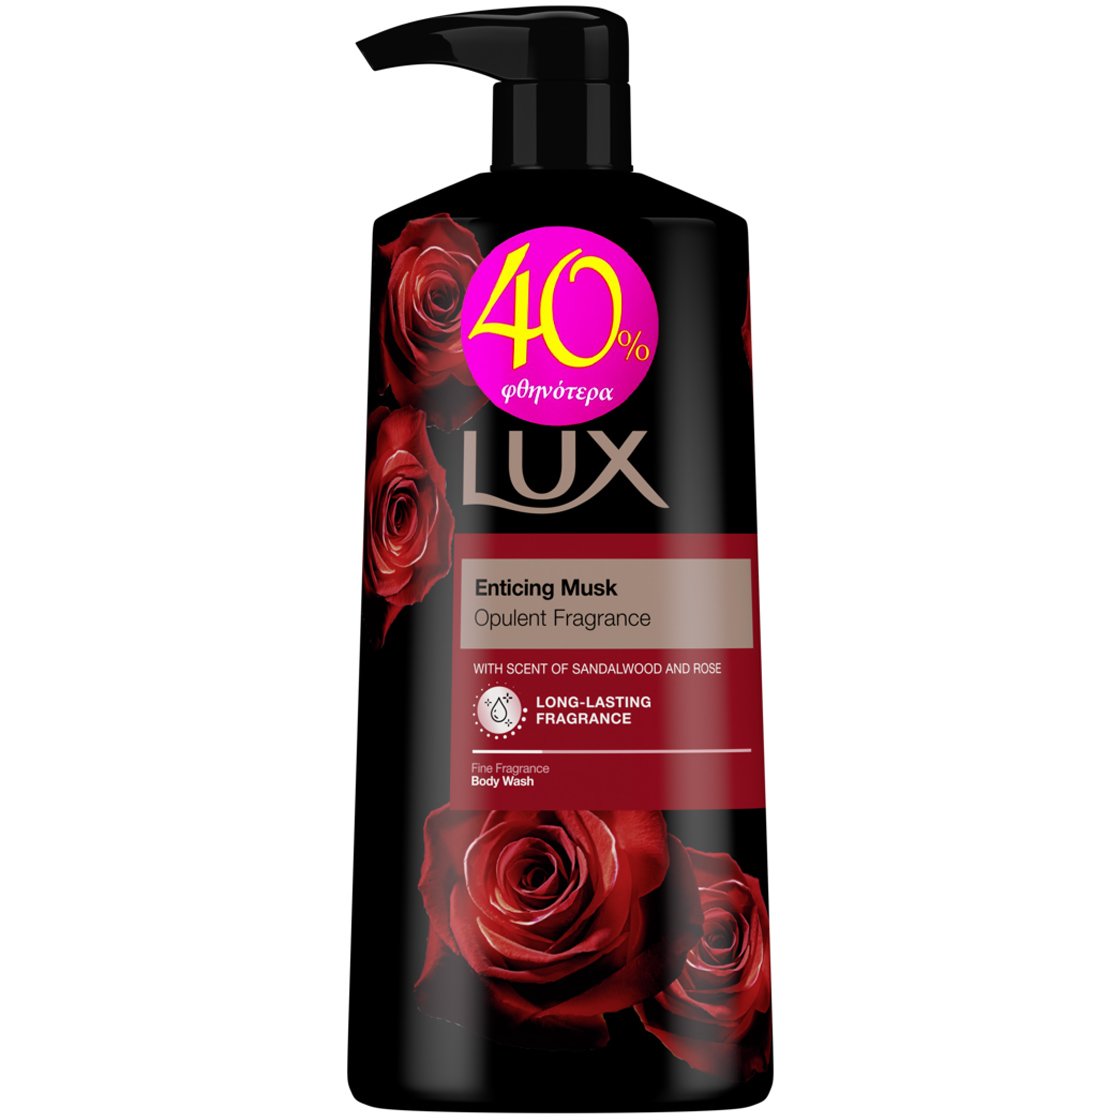 Lux Enticing Musk Body Wash Αφρόλουτρο με Γοητευτικό Άρωμα από Τριαντάφυλλα & Σανδαλόξυλο 560ml Promo -40%